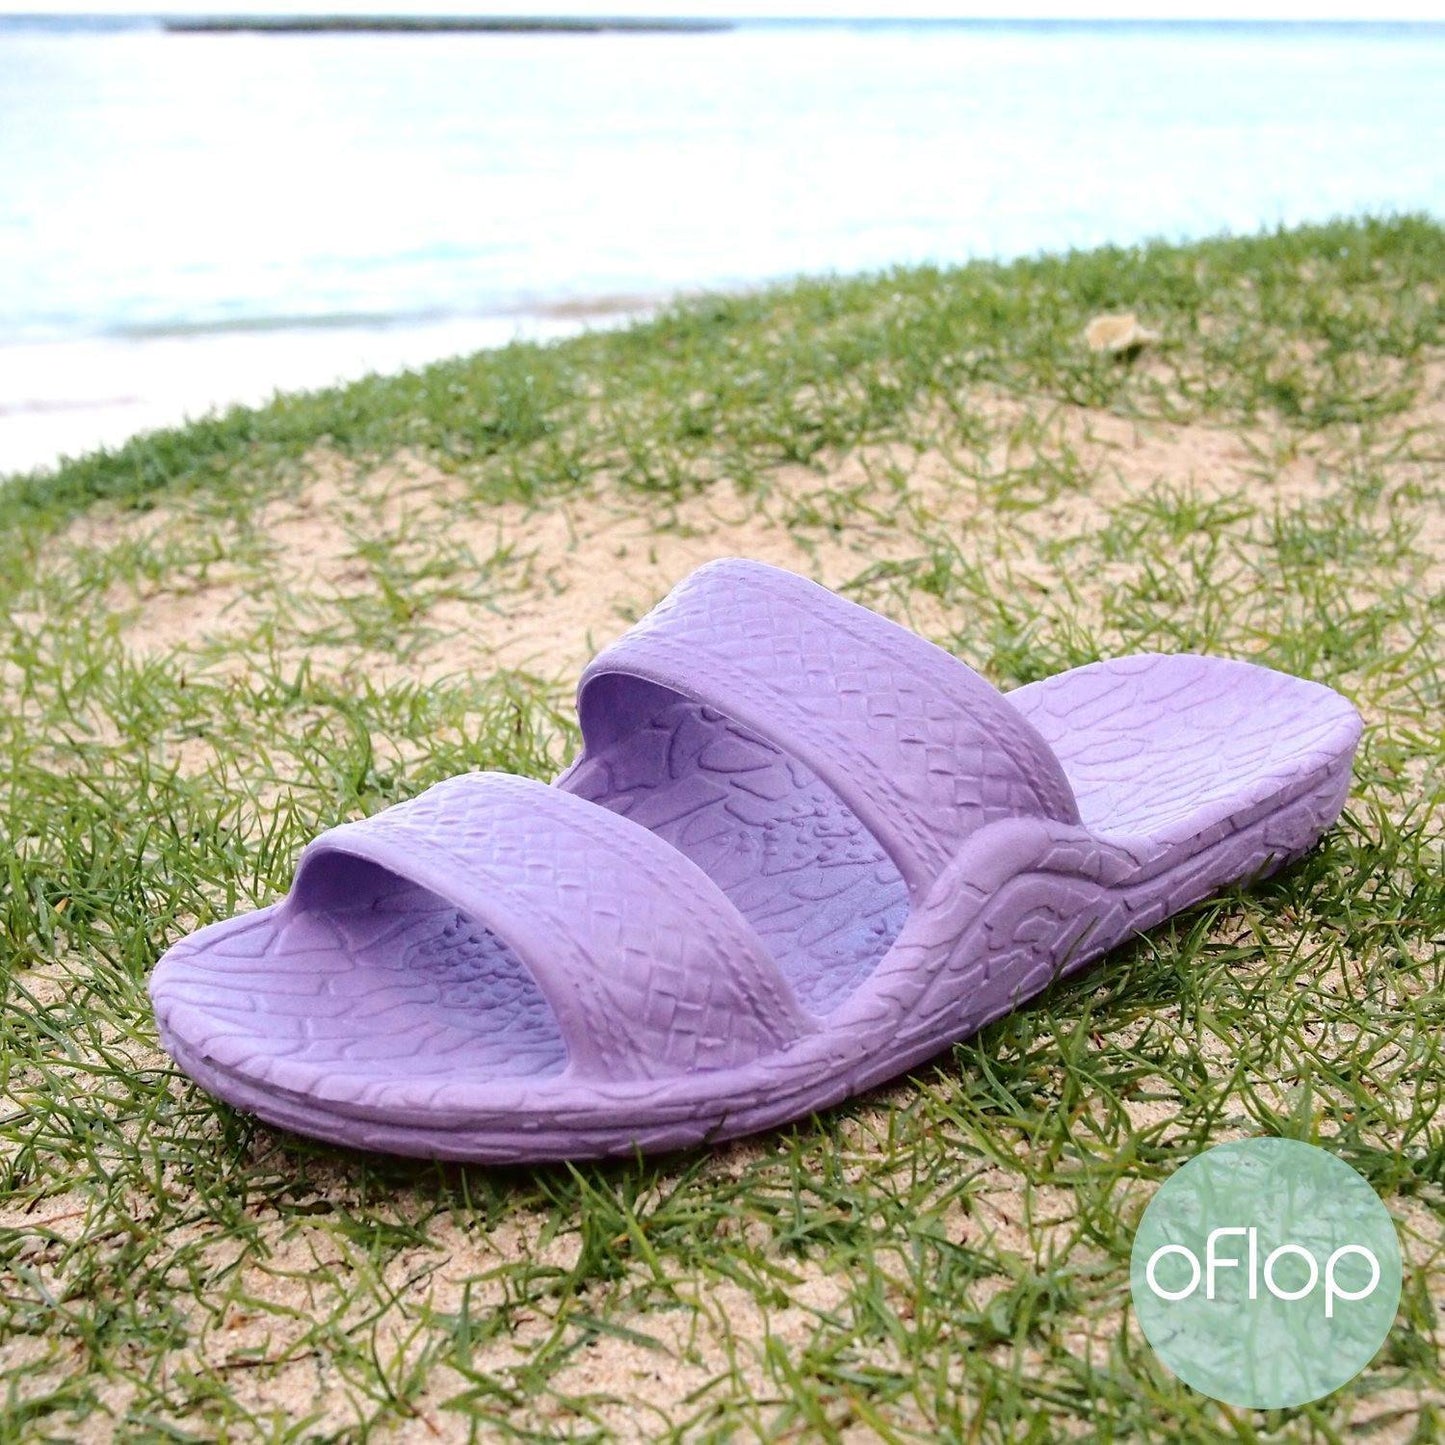 Sandals - Lilac Jandals -- Pali Hawaii Hawaiian Jesus Sandals